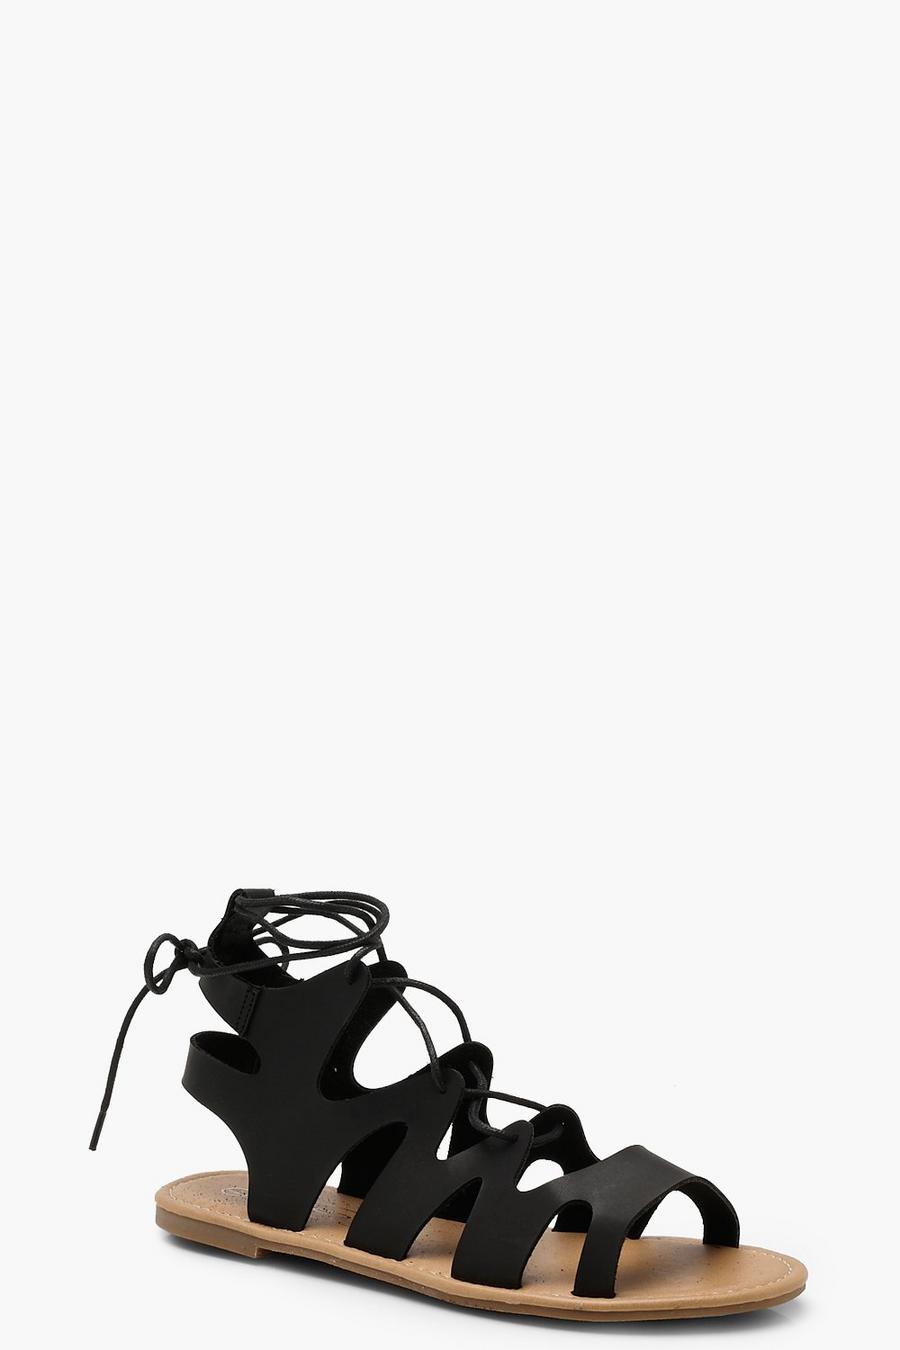 Black Lace Up Gladiator Sandals image number 1